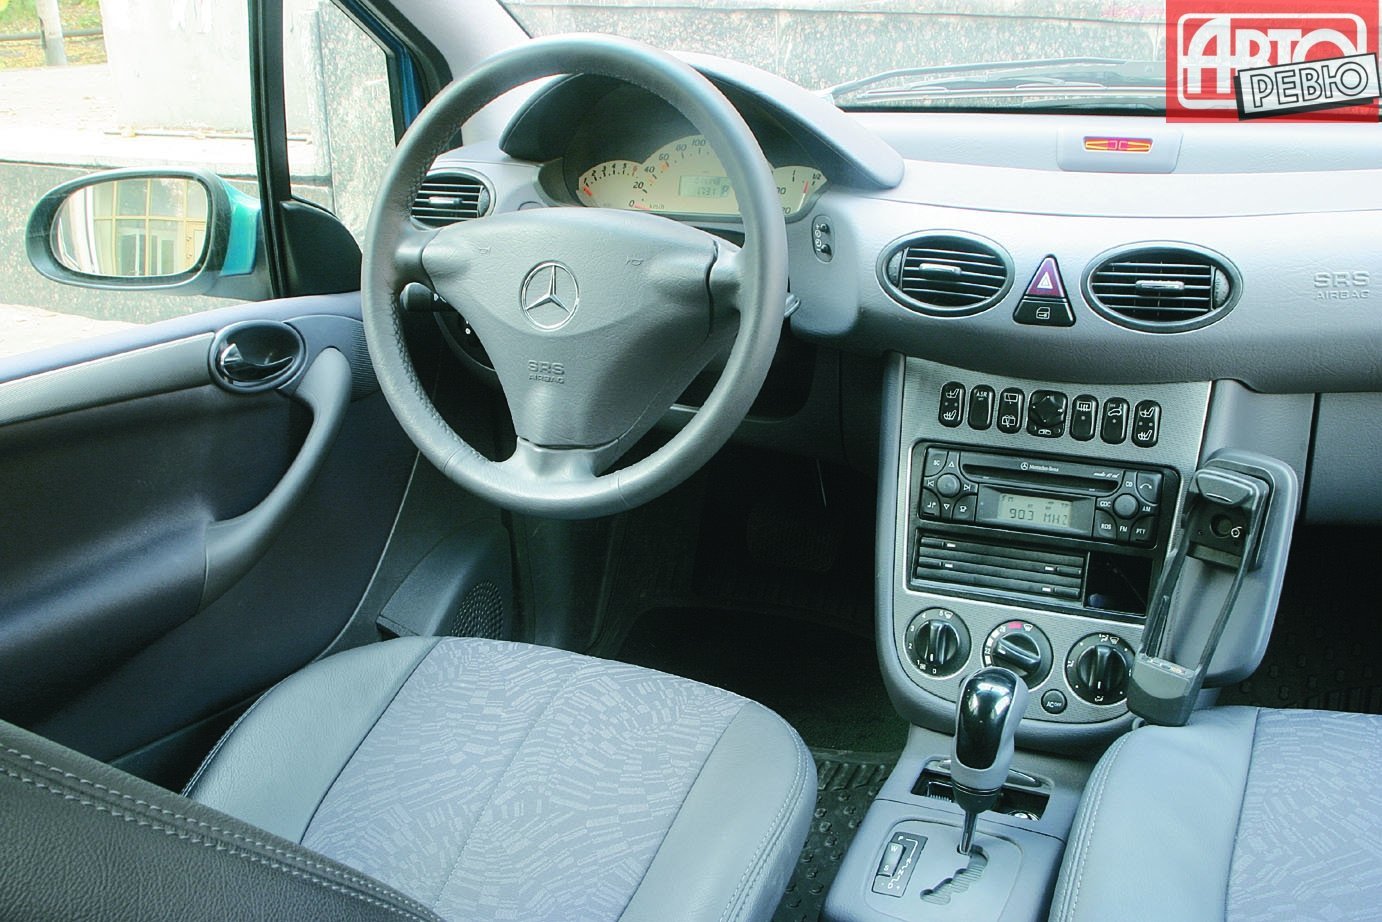 хэтчбек 5 дв. Mercedes-Benz A-klasse 2001 - 2004г выпуска модификация 1.4 AT (82 л.с.)